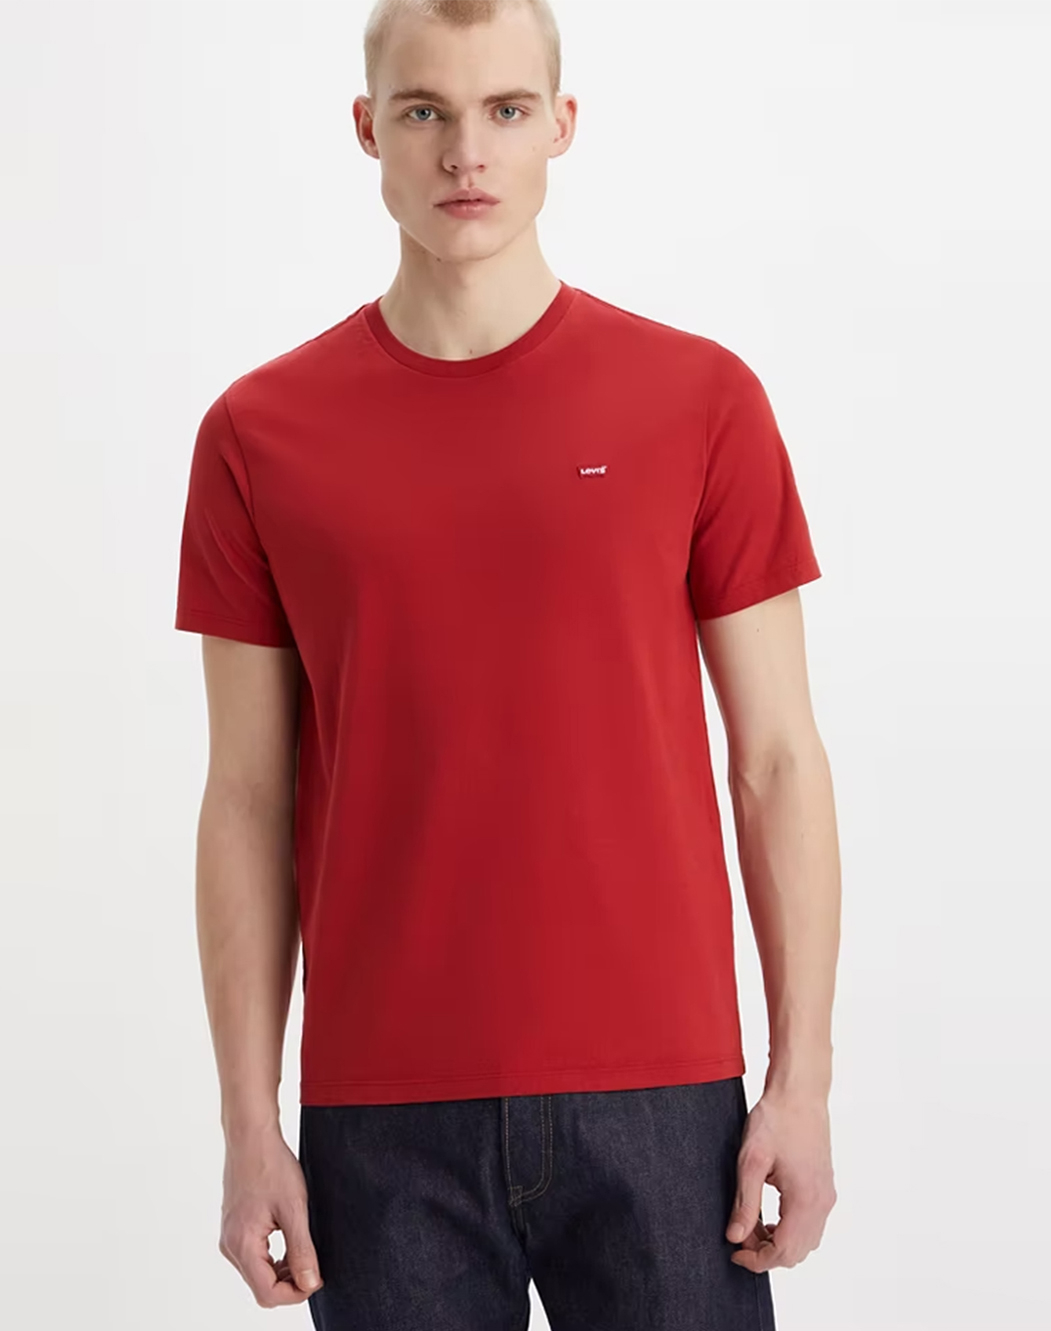 Levi's® camiseta de hombre de m/c 56605-0176 roja